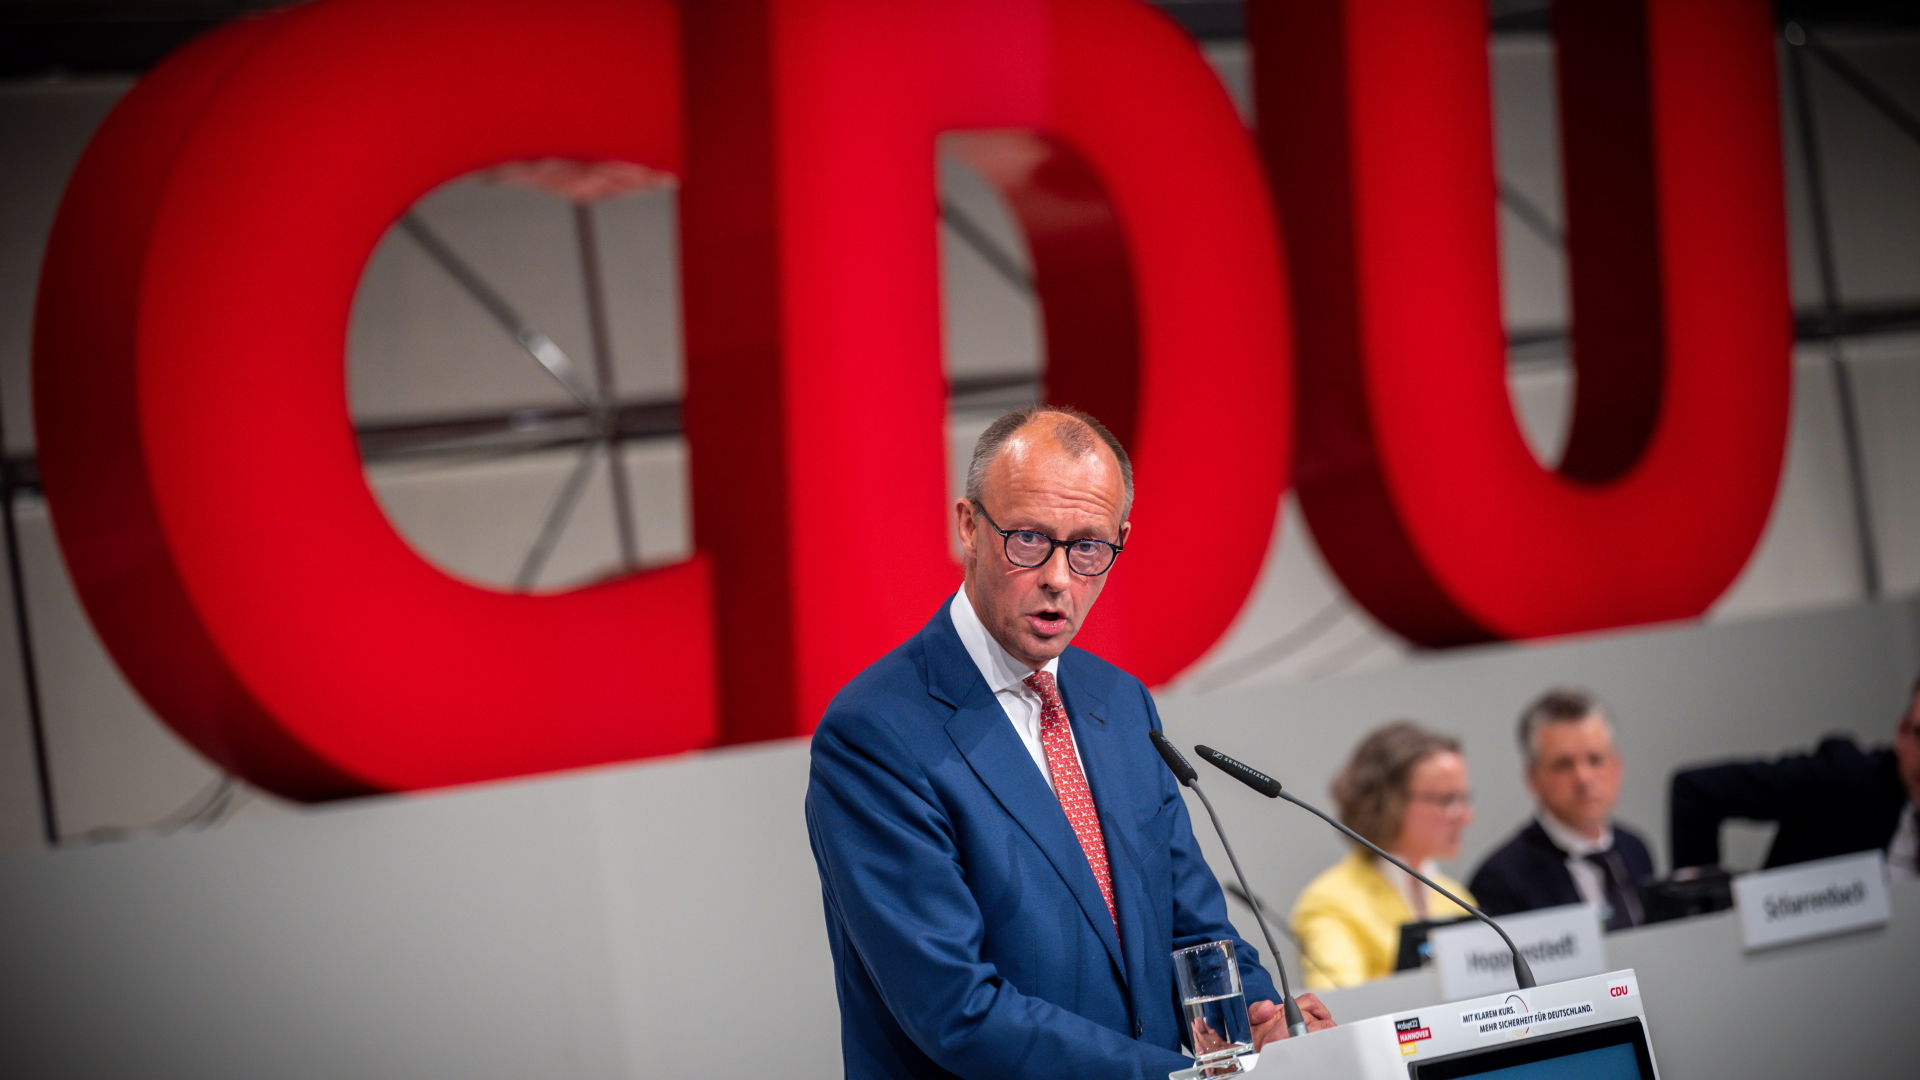 Friedrich Merz, CDU Bundesvorsitzender, spricht beim CDU Bundesparteitag. | dpa